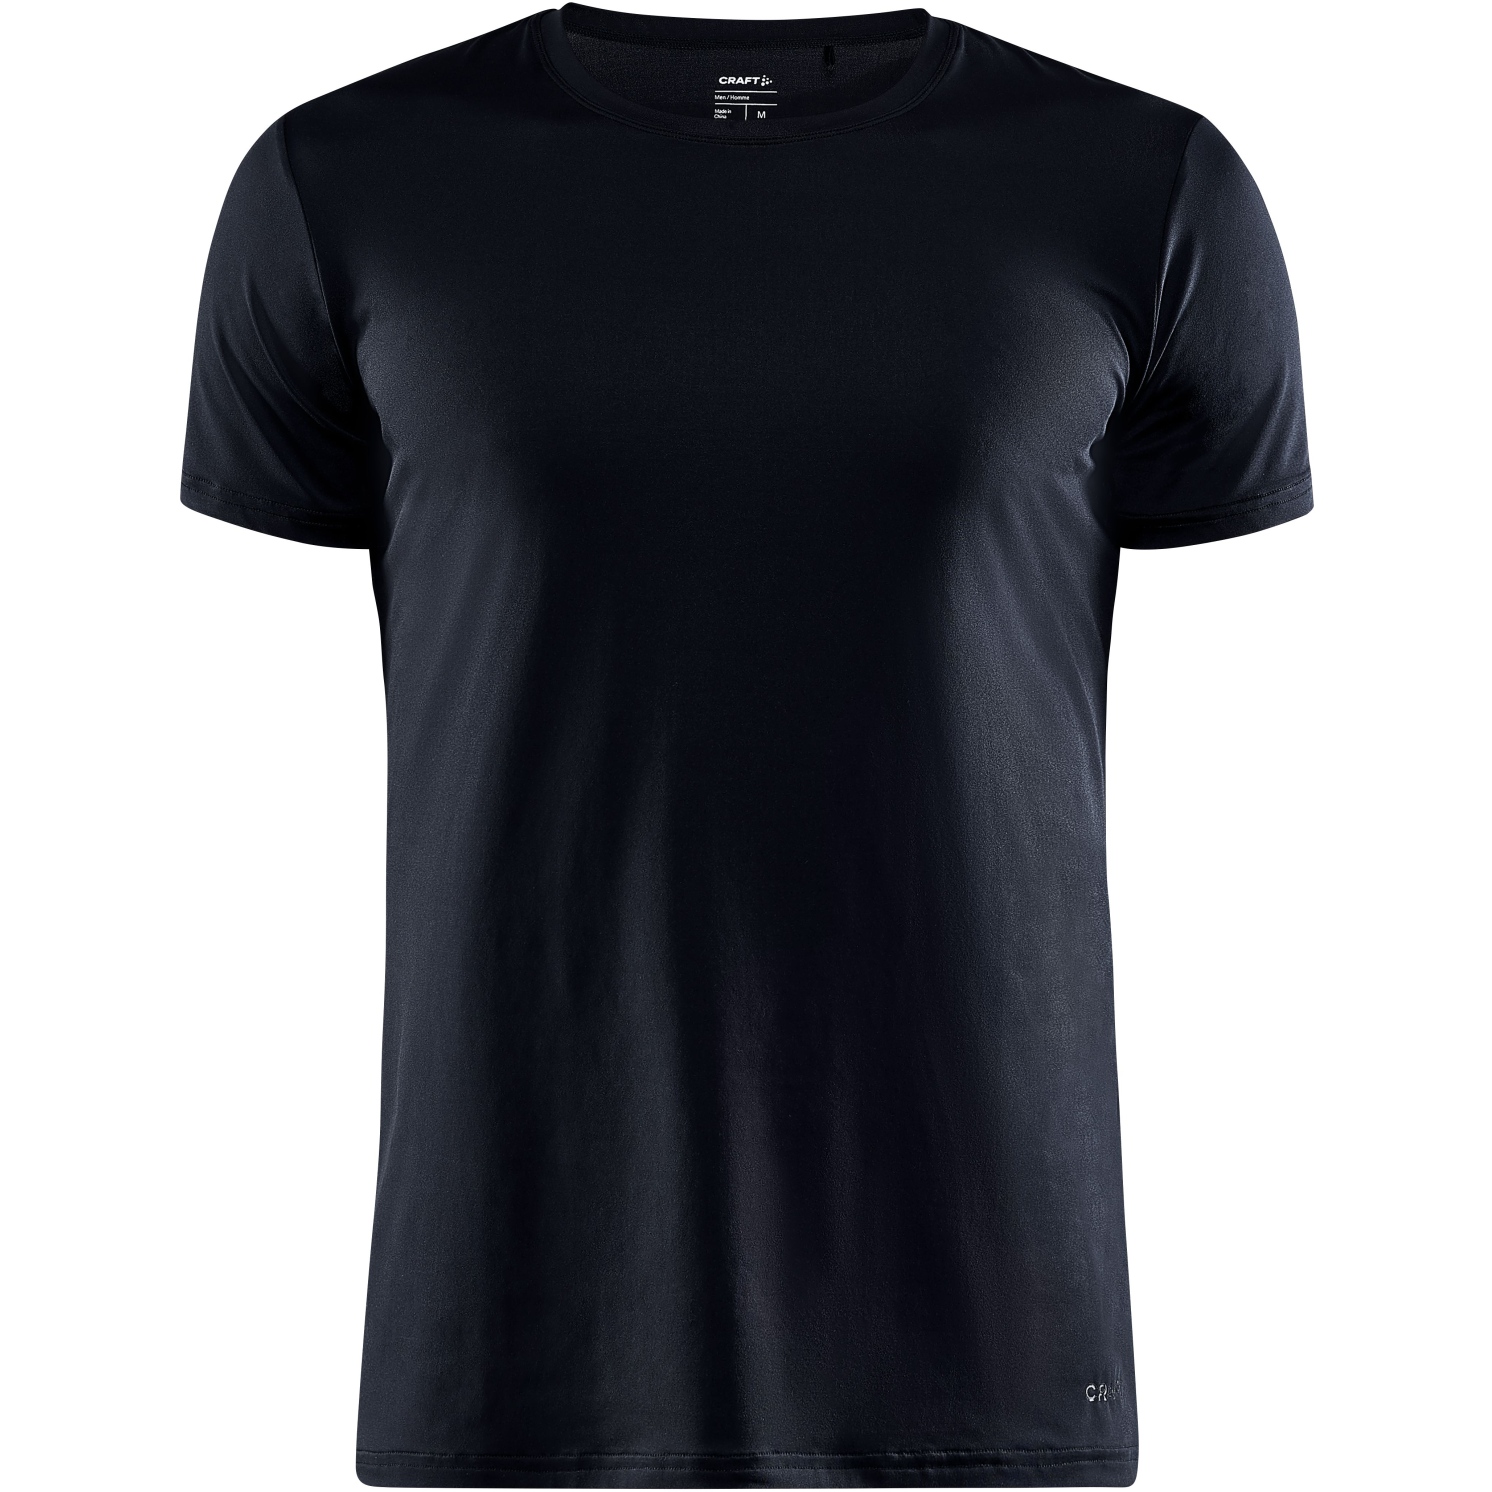 Produktbild von CRAFT Core Dry Herren T-Shirt - Black